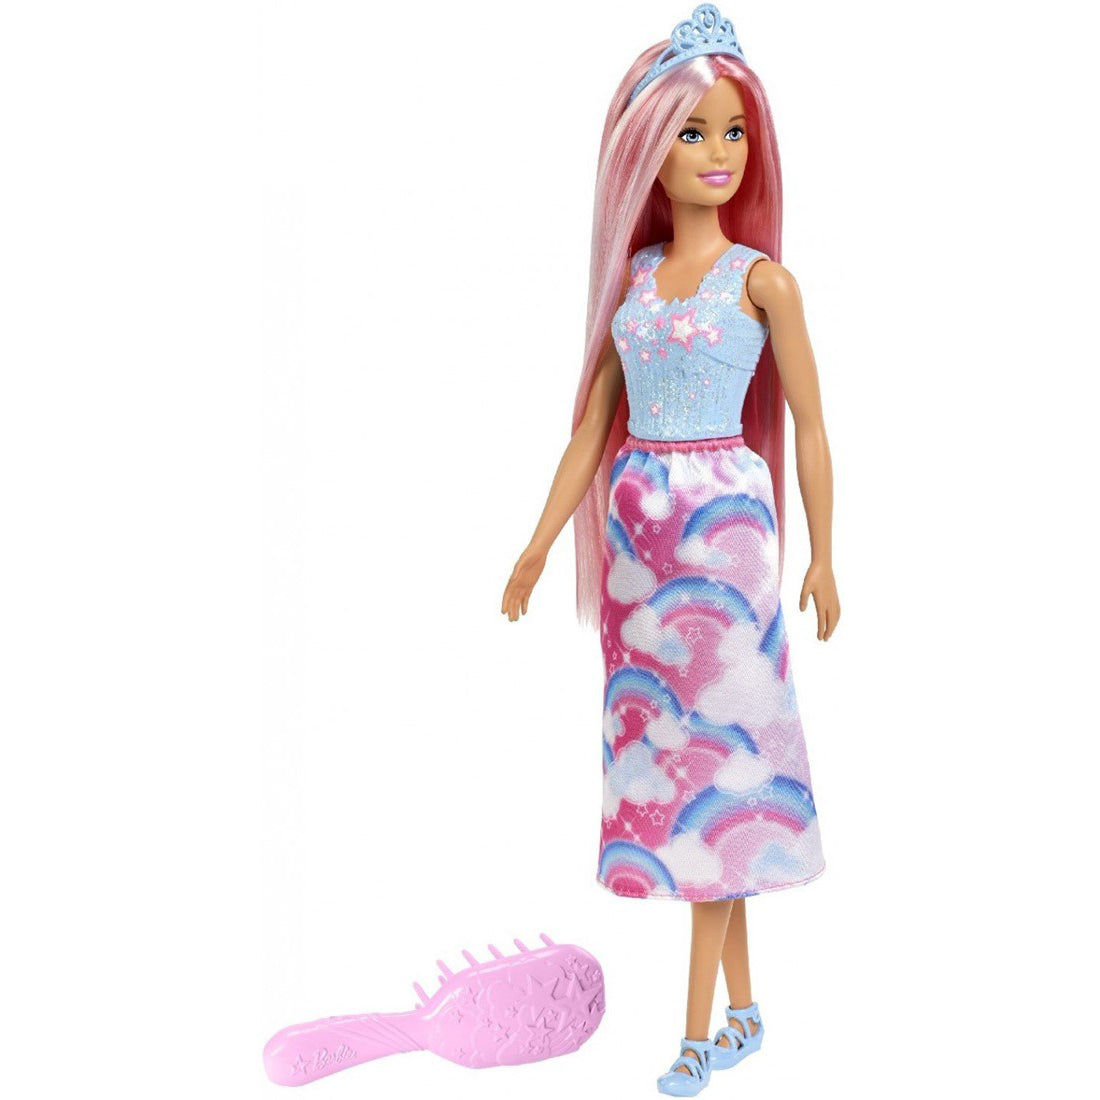 n°2 Barbie Dreamtopia